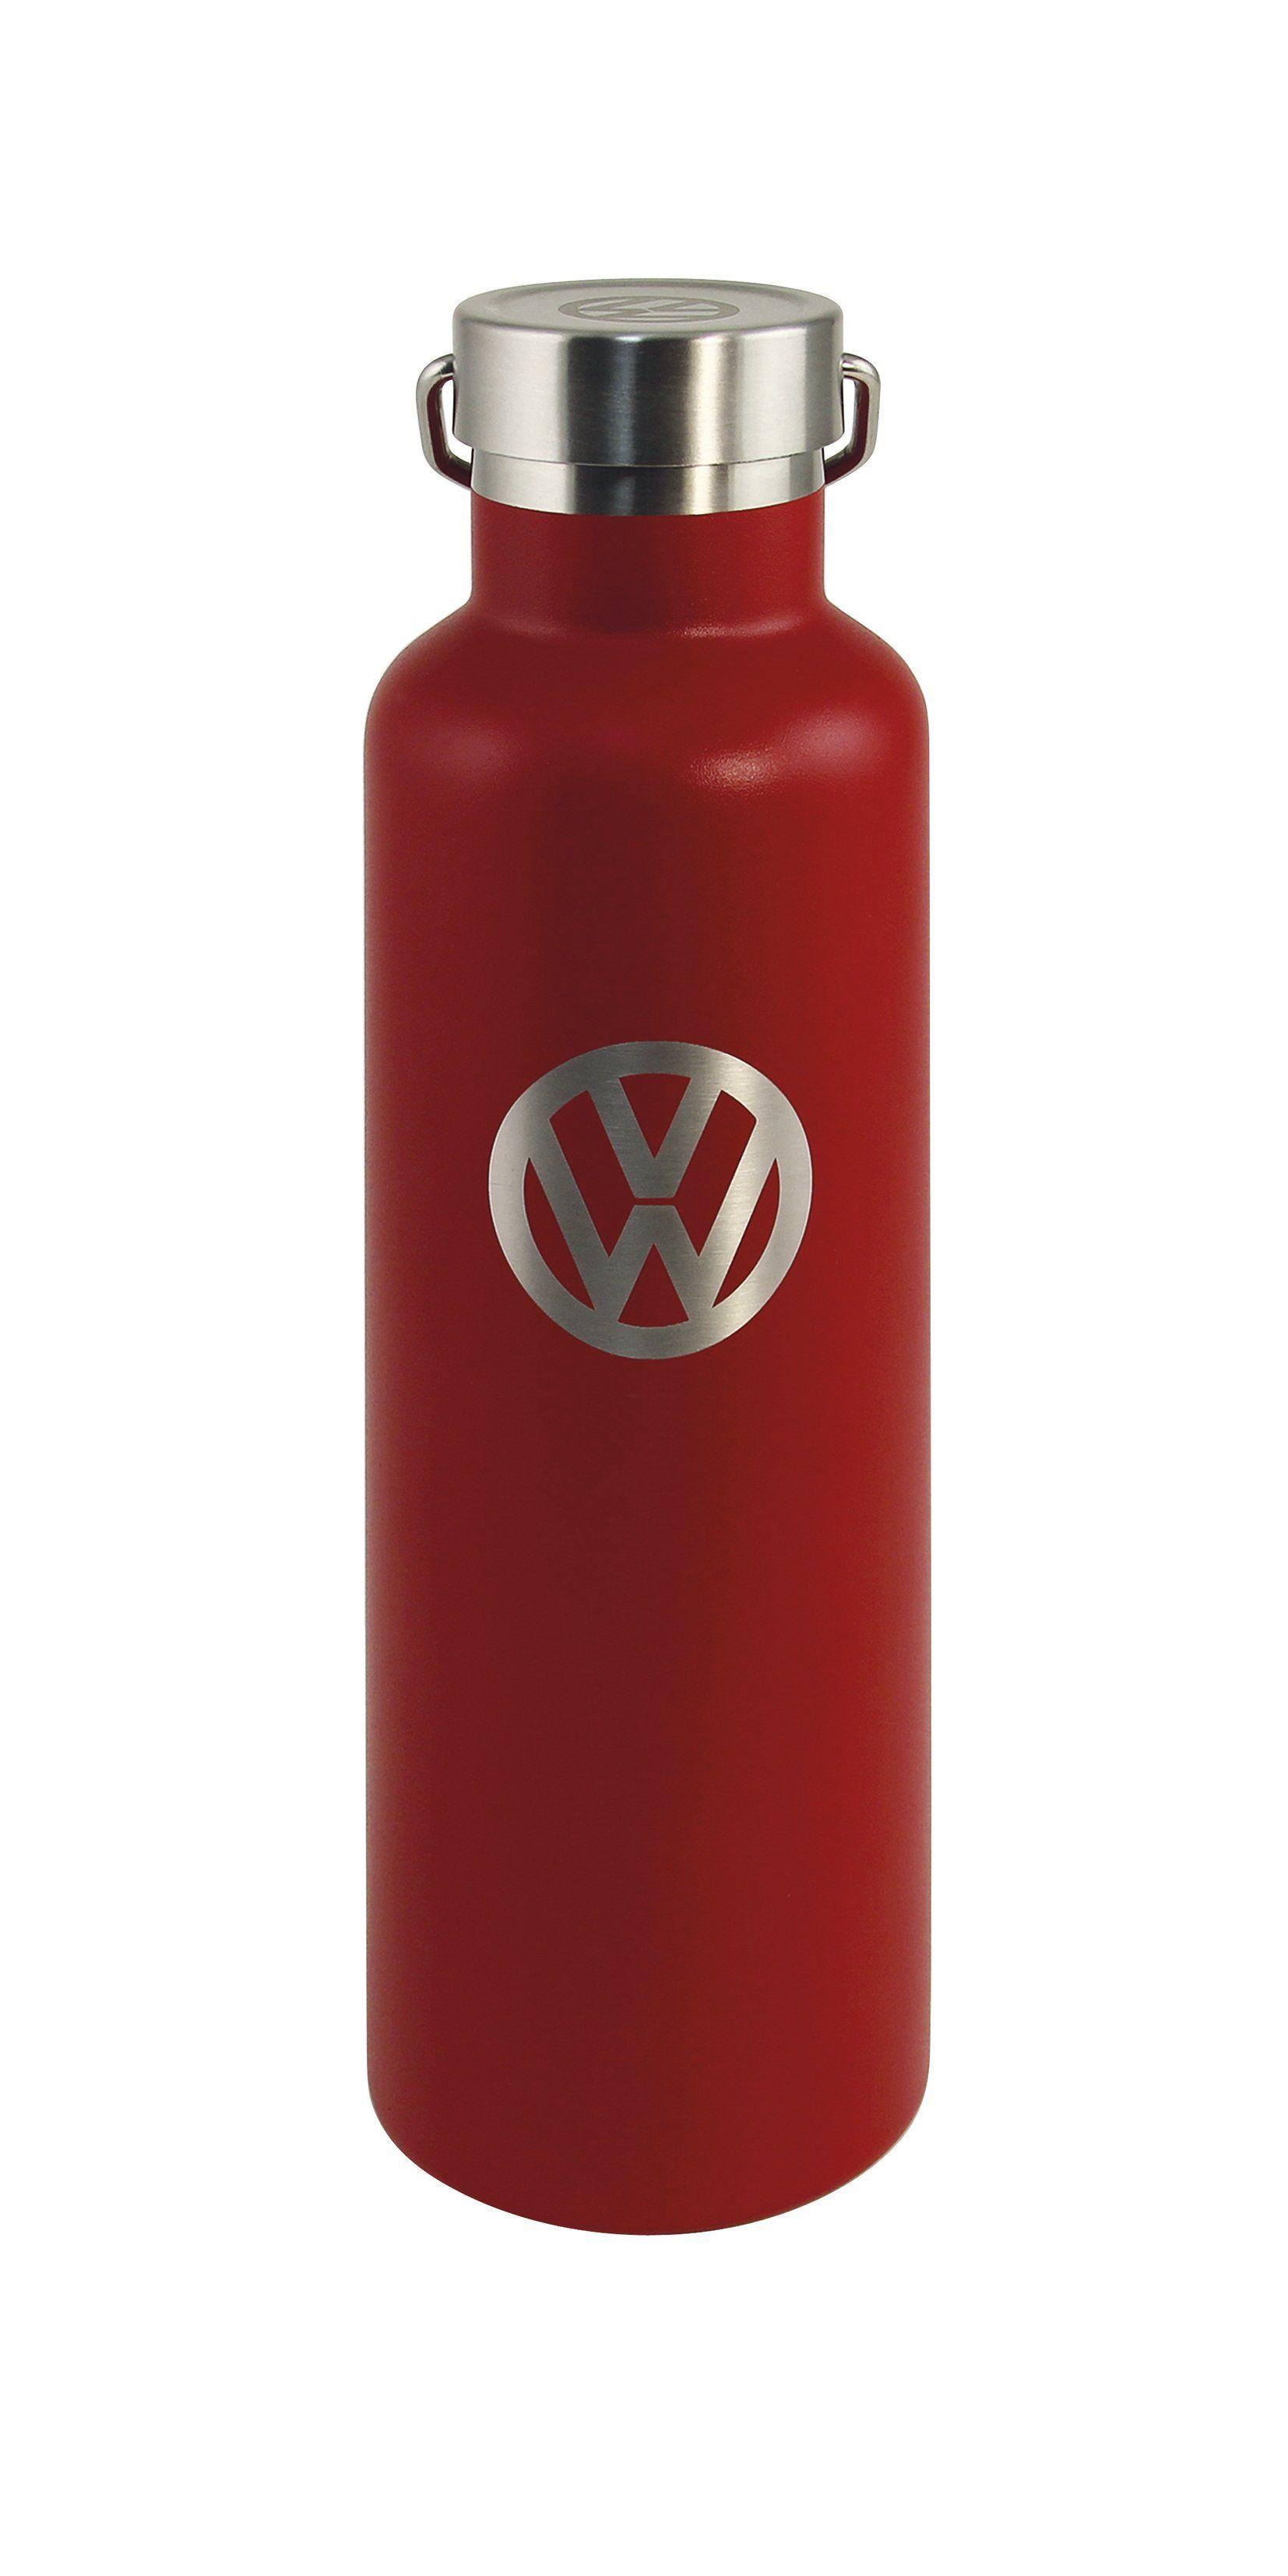 Red Volkswagen Logo - Volkswagen Thermos Drinking Bottle 25 fl.oz. with VW Logo - Red BUTF01